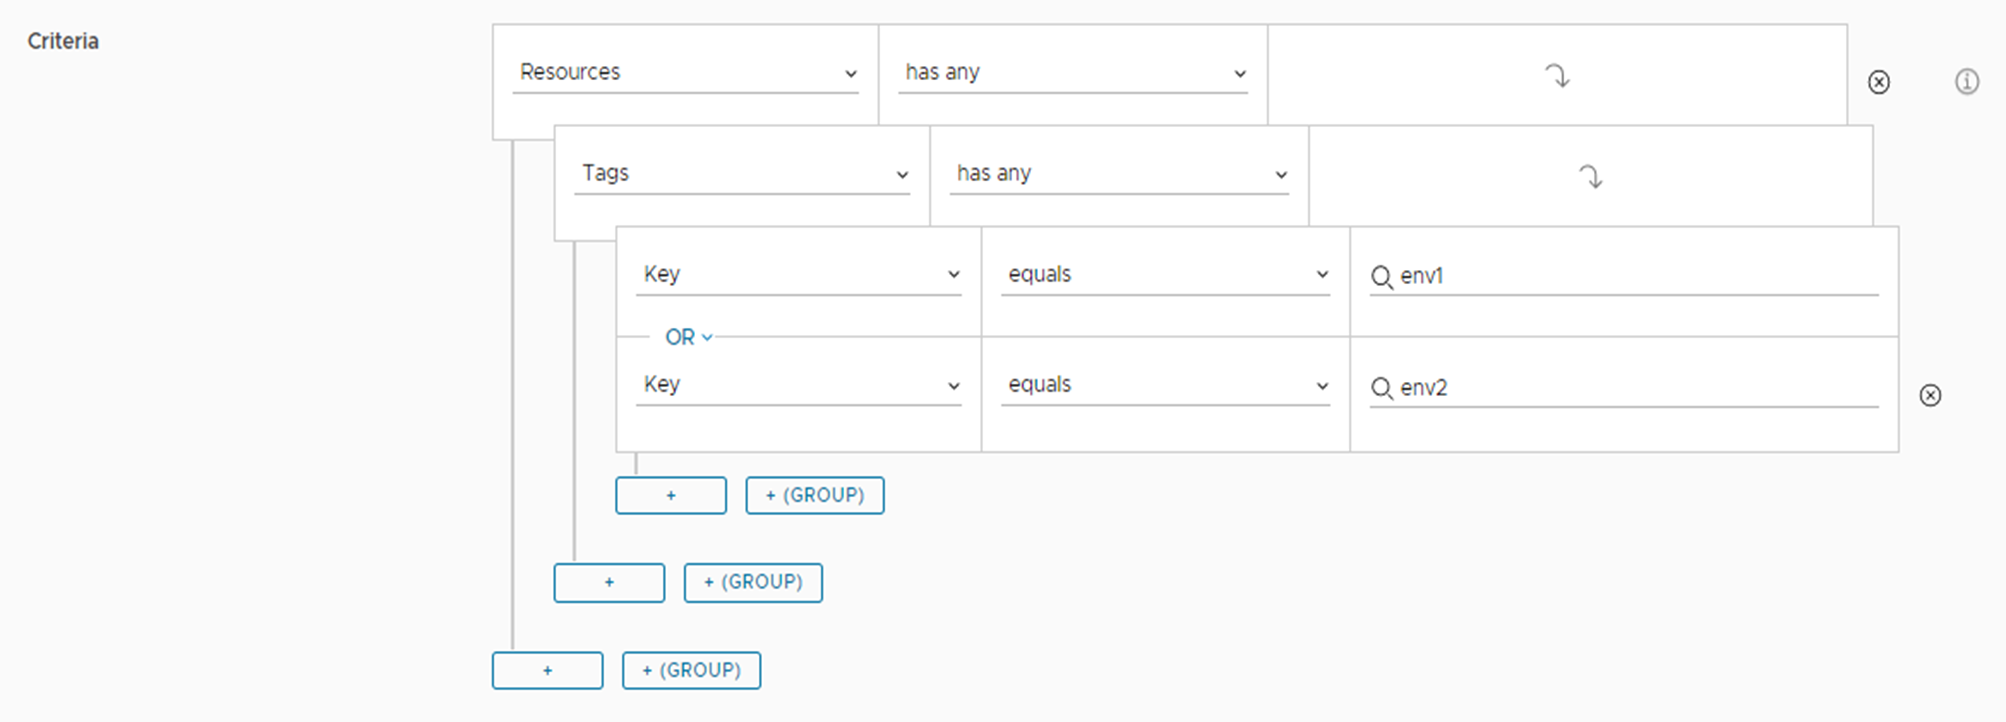 Ejemplo de la expresión de criterios de implementación de varias claves como aparece en la interfaz de usuario.